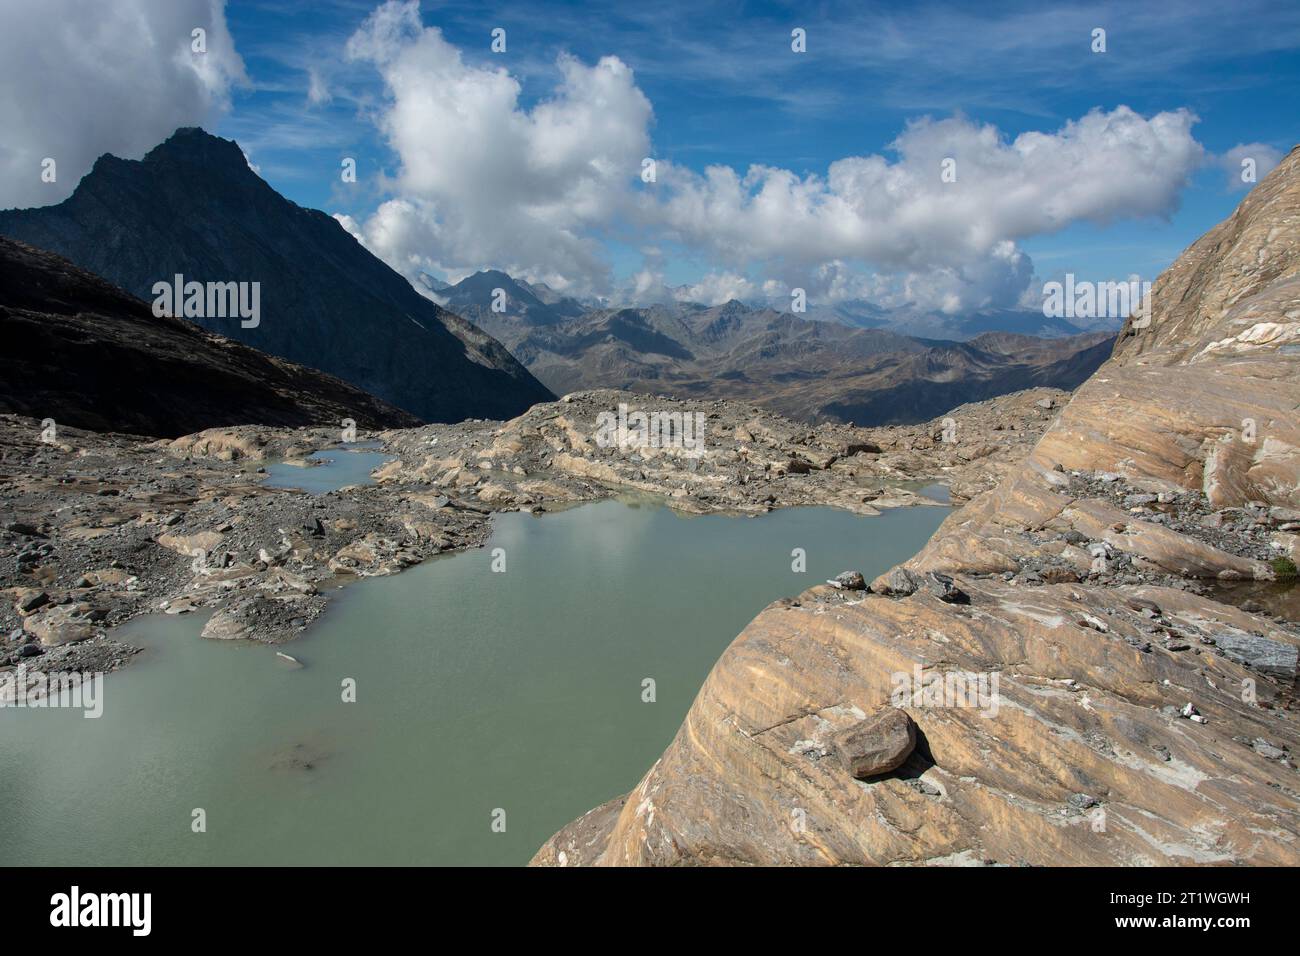 Gletschersee am fuss des Chaltwassergletschers Foto Stock